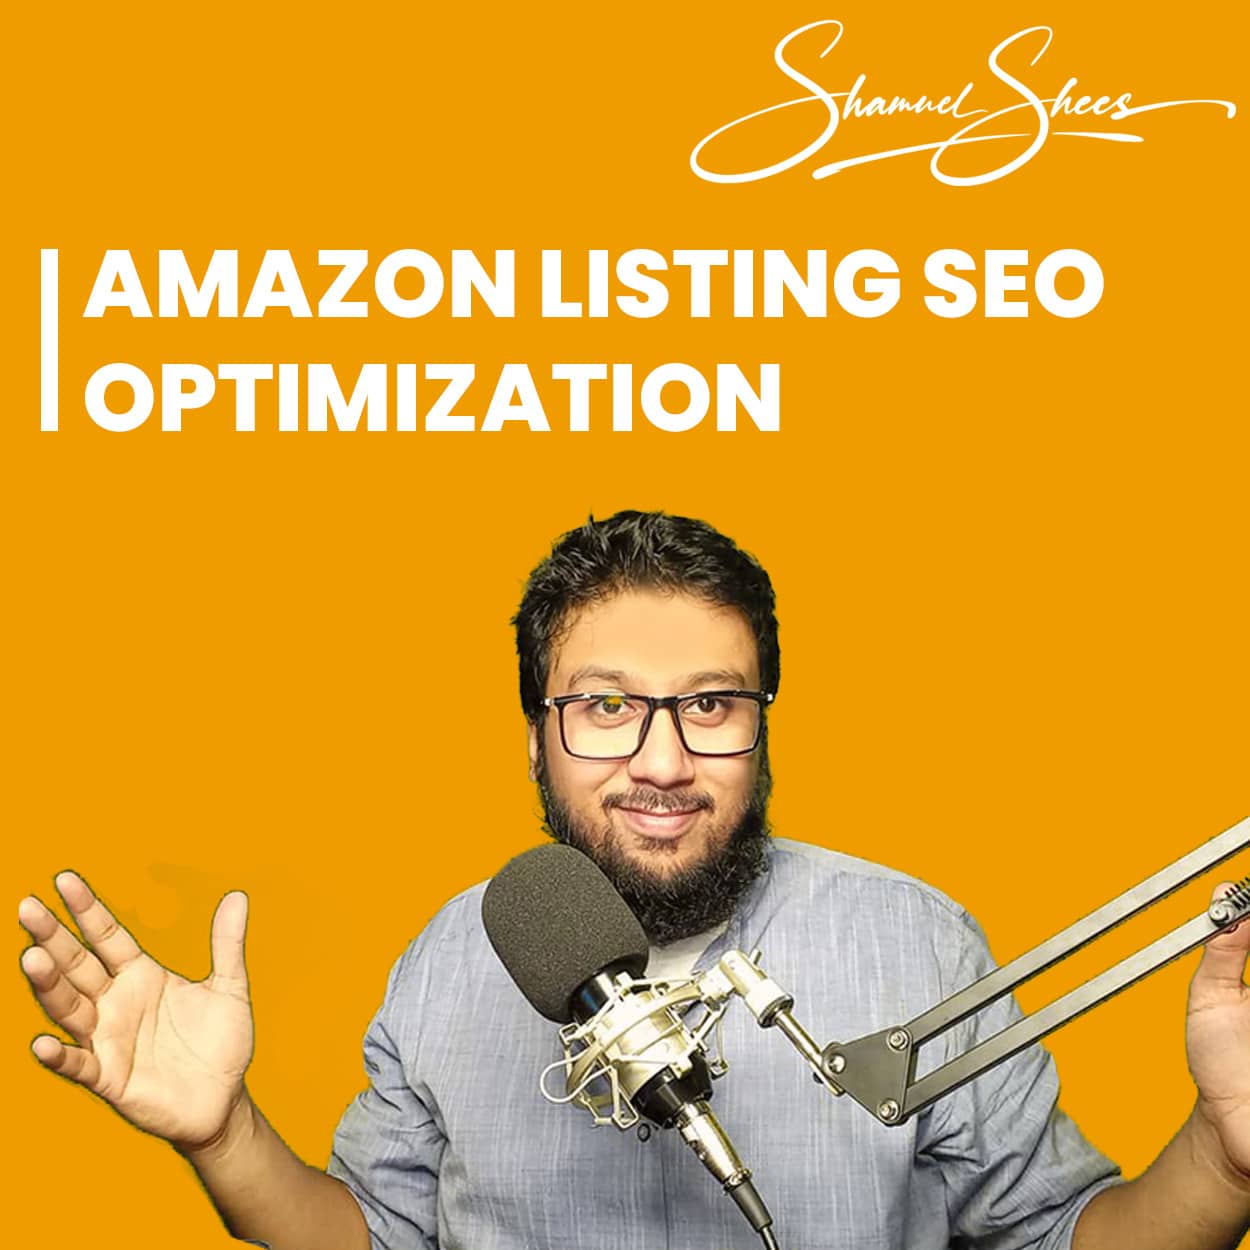 Amazon Listing SEO Optimization Syed Muhammad Shamuel Shees